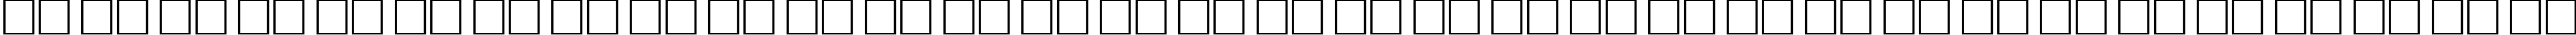 Пример написания русского алфавита шрифтом School Plain:001.00155n